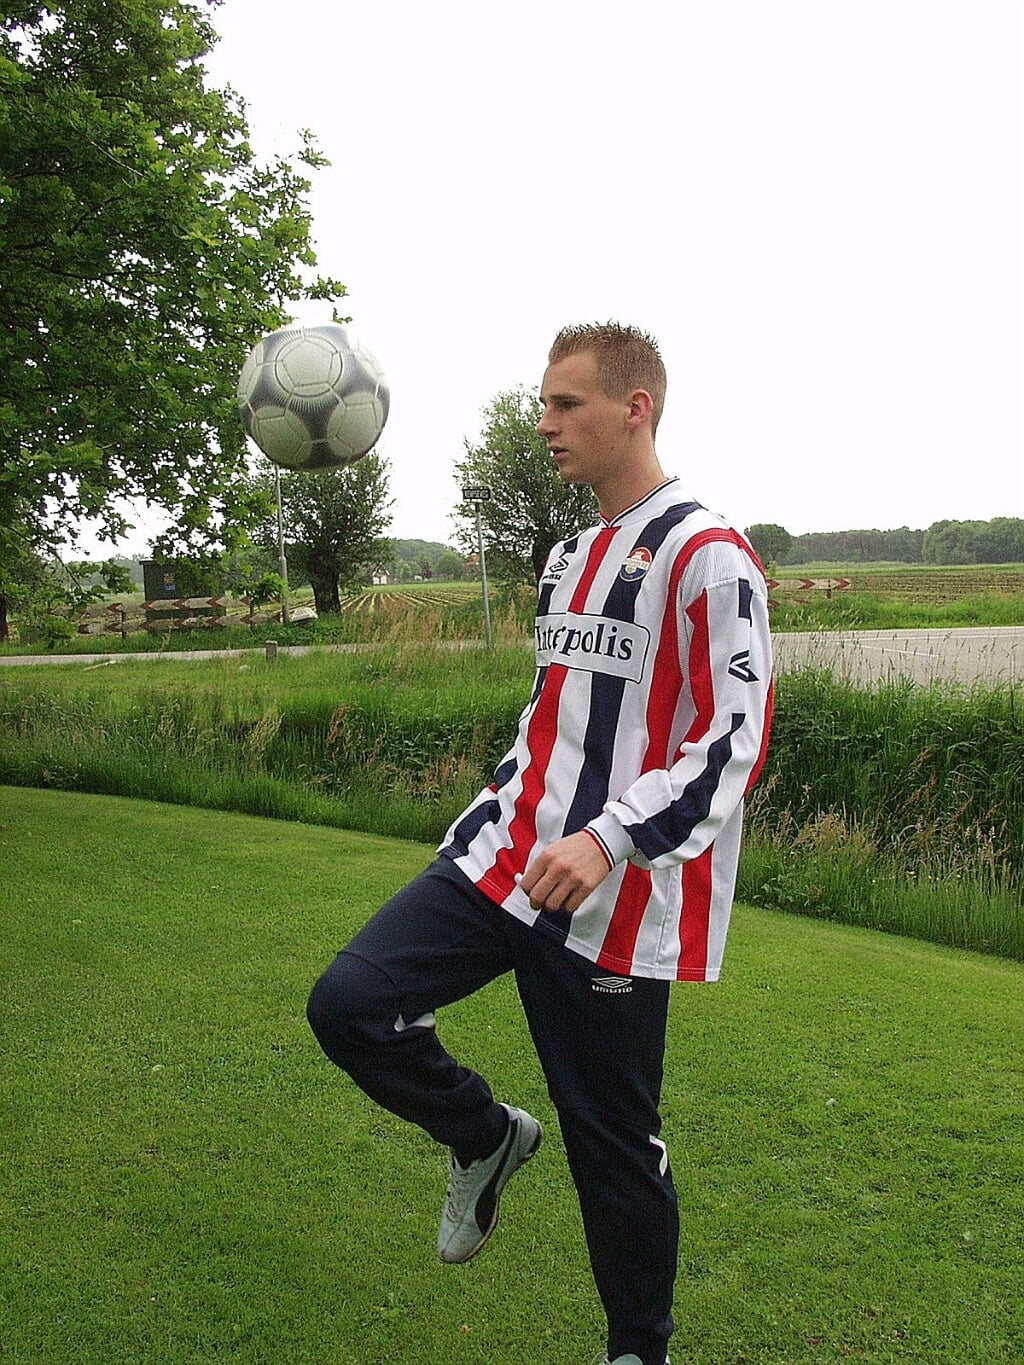 Frank van der Struijk uit Lennisheuvel bezocht DVG tijdens het jubileumjaar met het beloftenelftal van Willem II. De voetballer zou uiteindelijk 270 wedstrijden in de Eredivisie spelen.